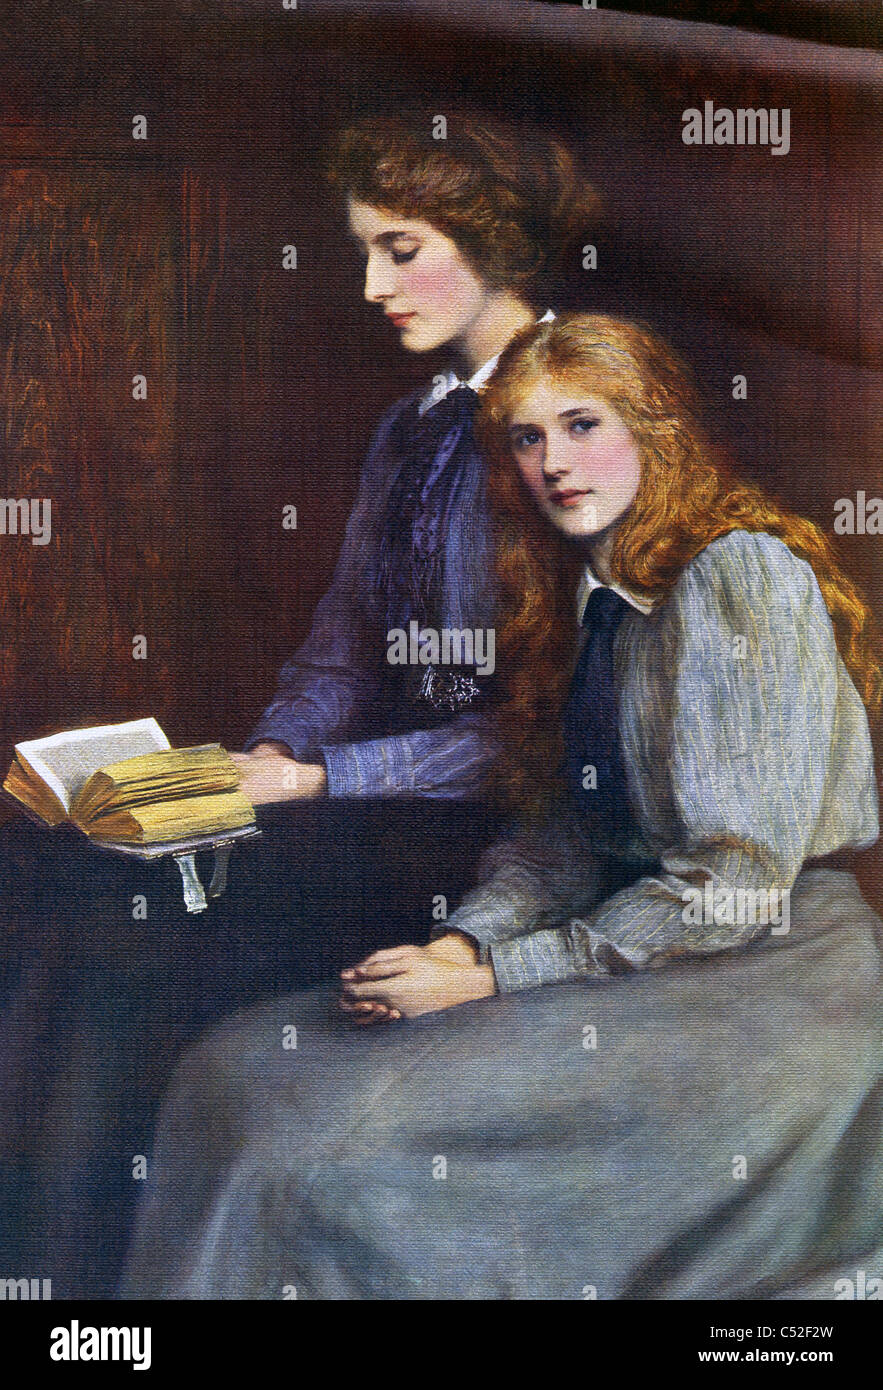 Der britische Künstler Ralph Peacock gemalt "The Sisters" im Jahr 1900. Peacock heiratete die ältere Schwester. Stockfoto